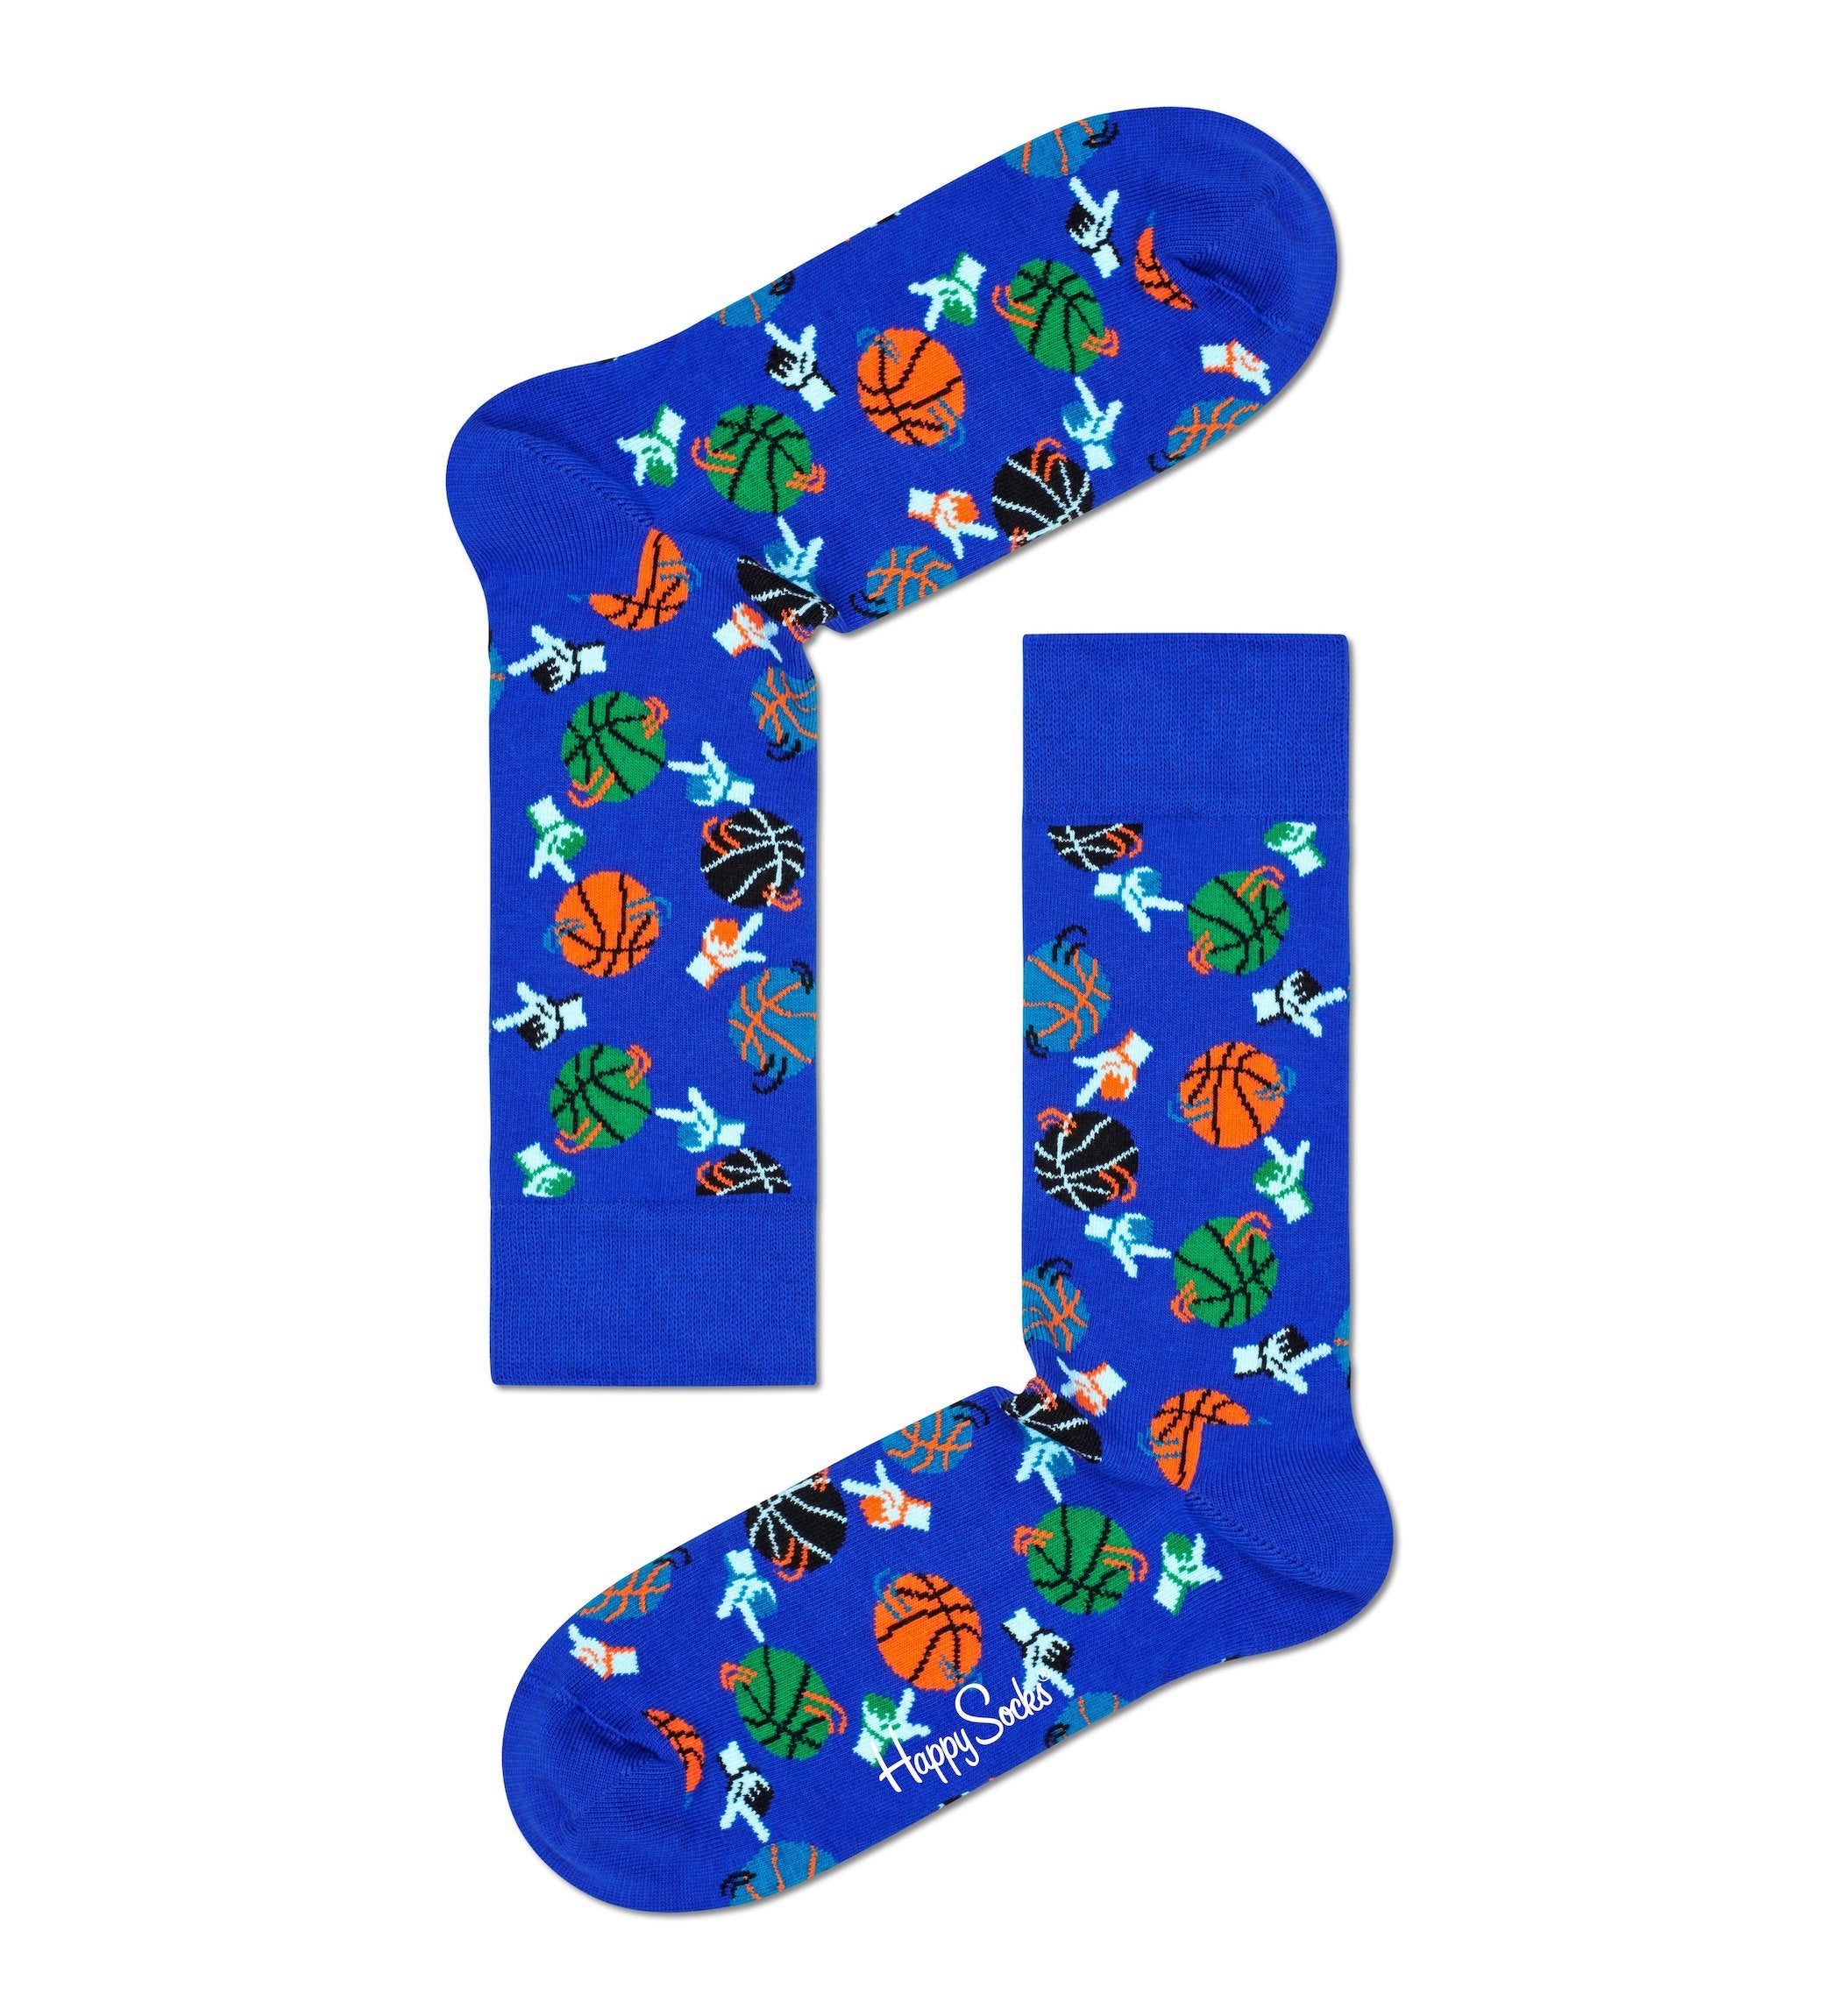 Modré ponožky Happy Socks s basketbalovými loptami, vzor Basketball